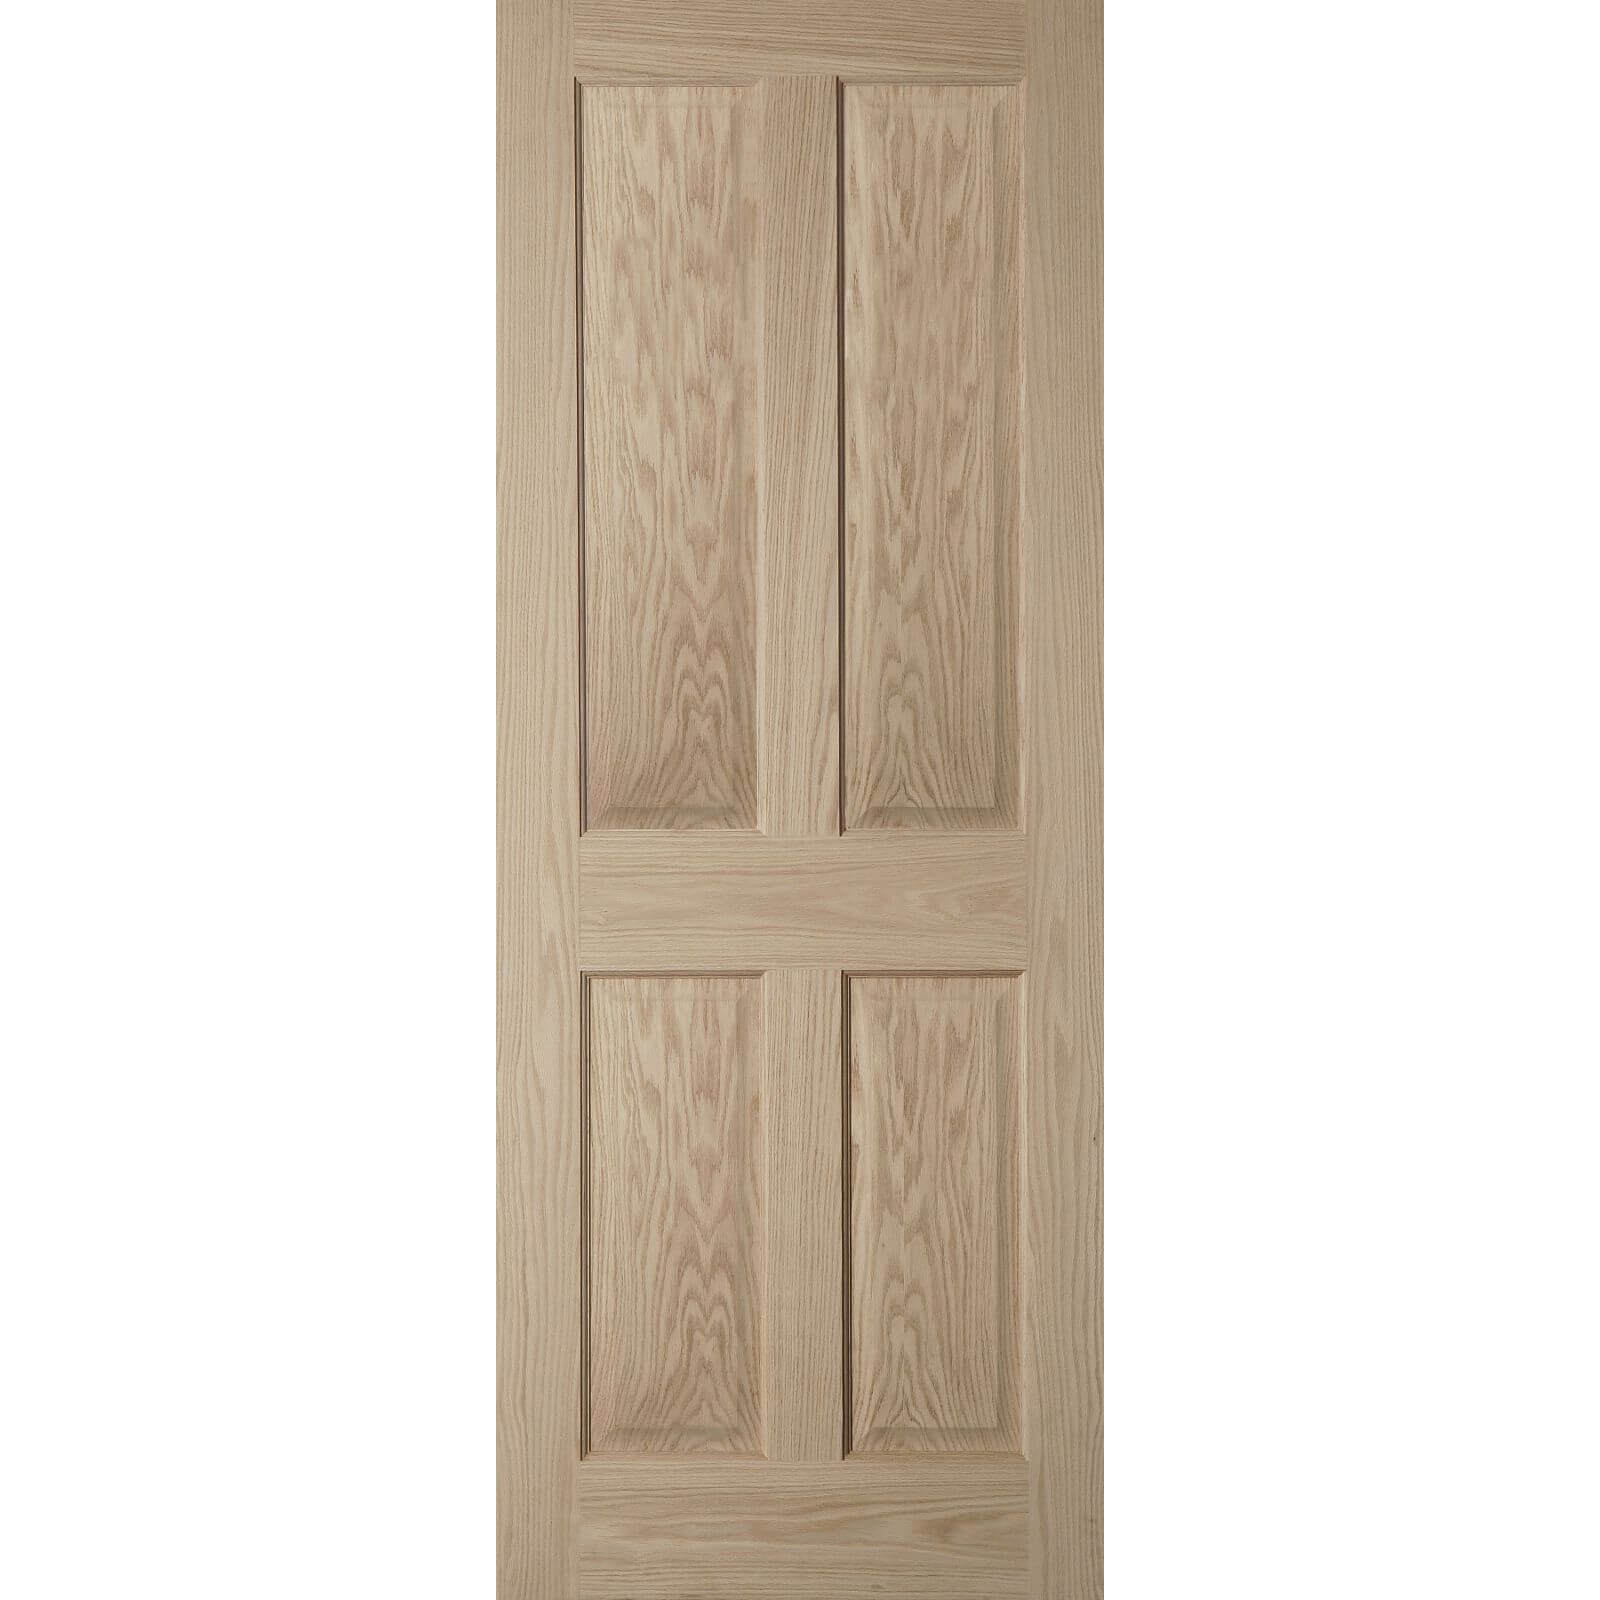 Photo of 4 Panel Oak Veneer Internal Fire Door - 826mm Wide